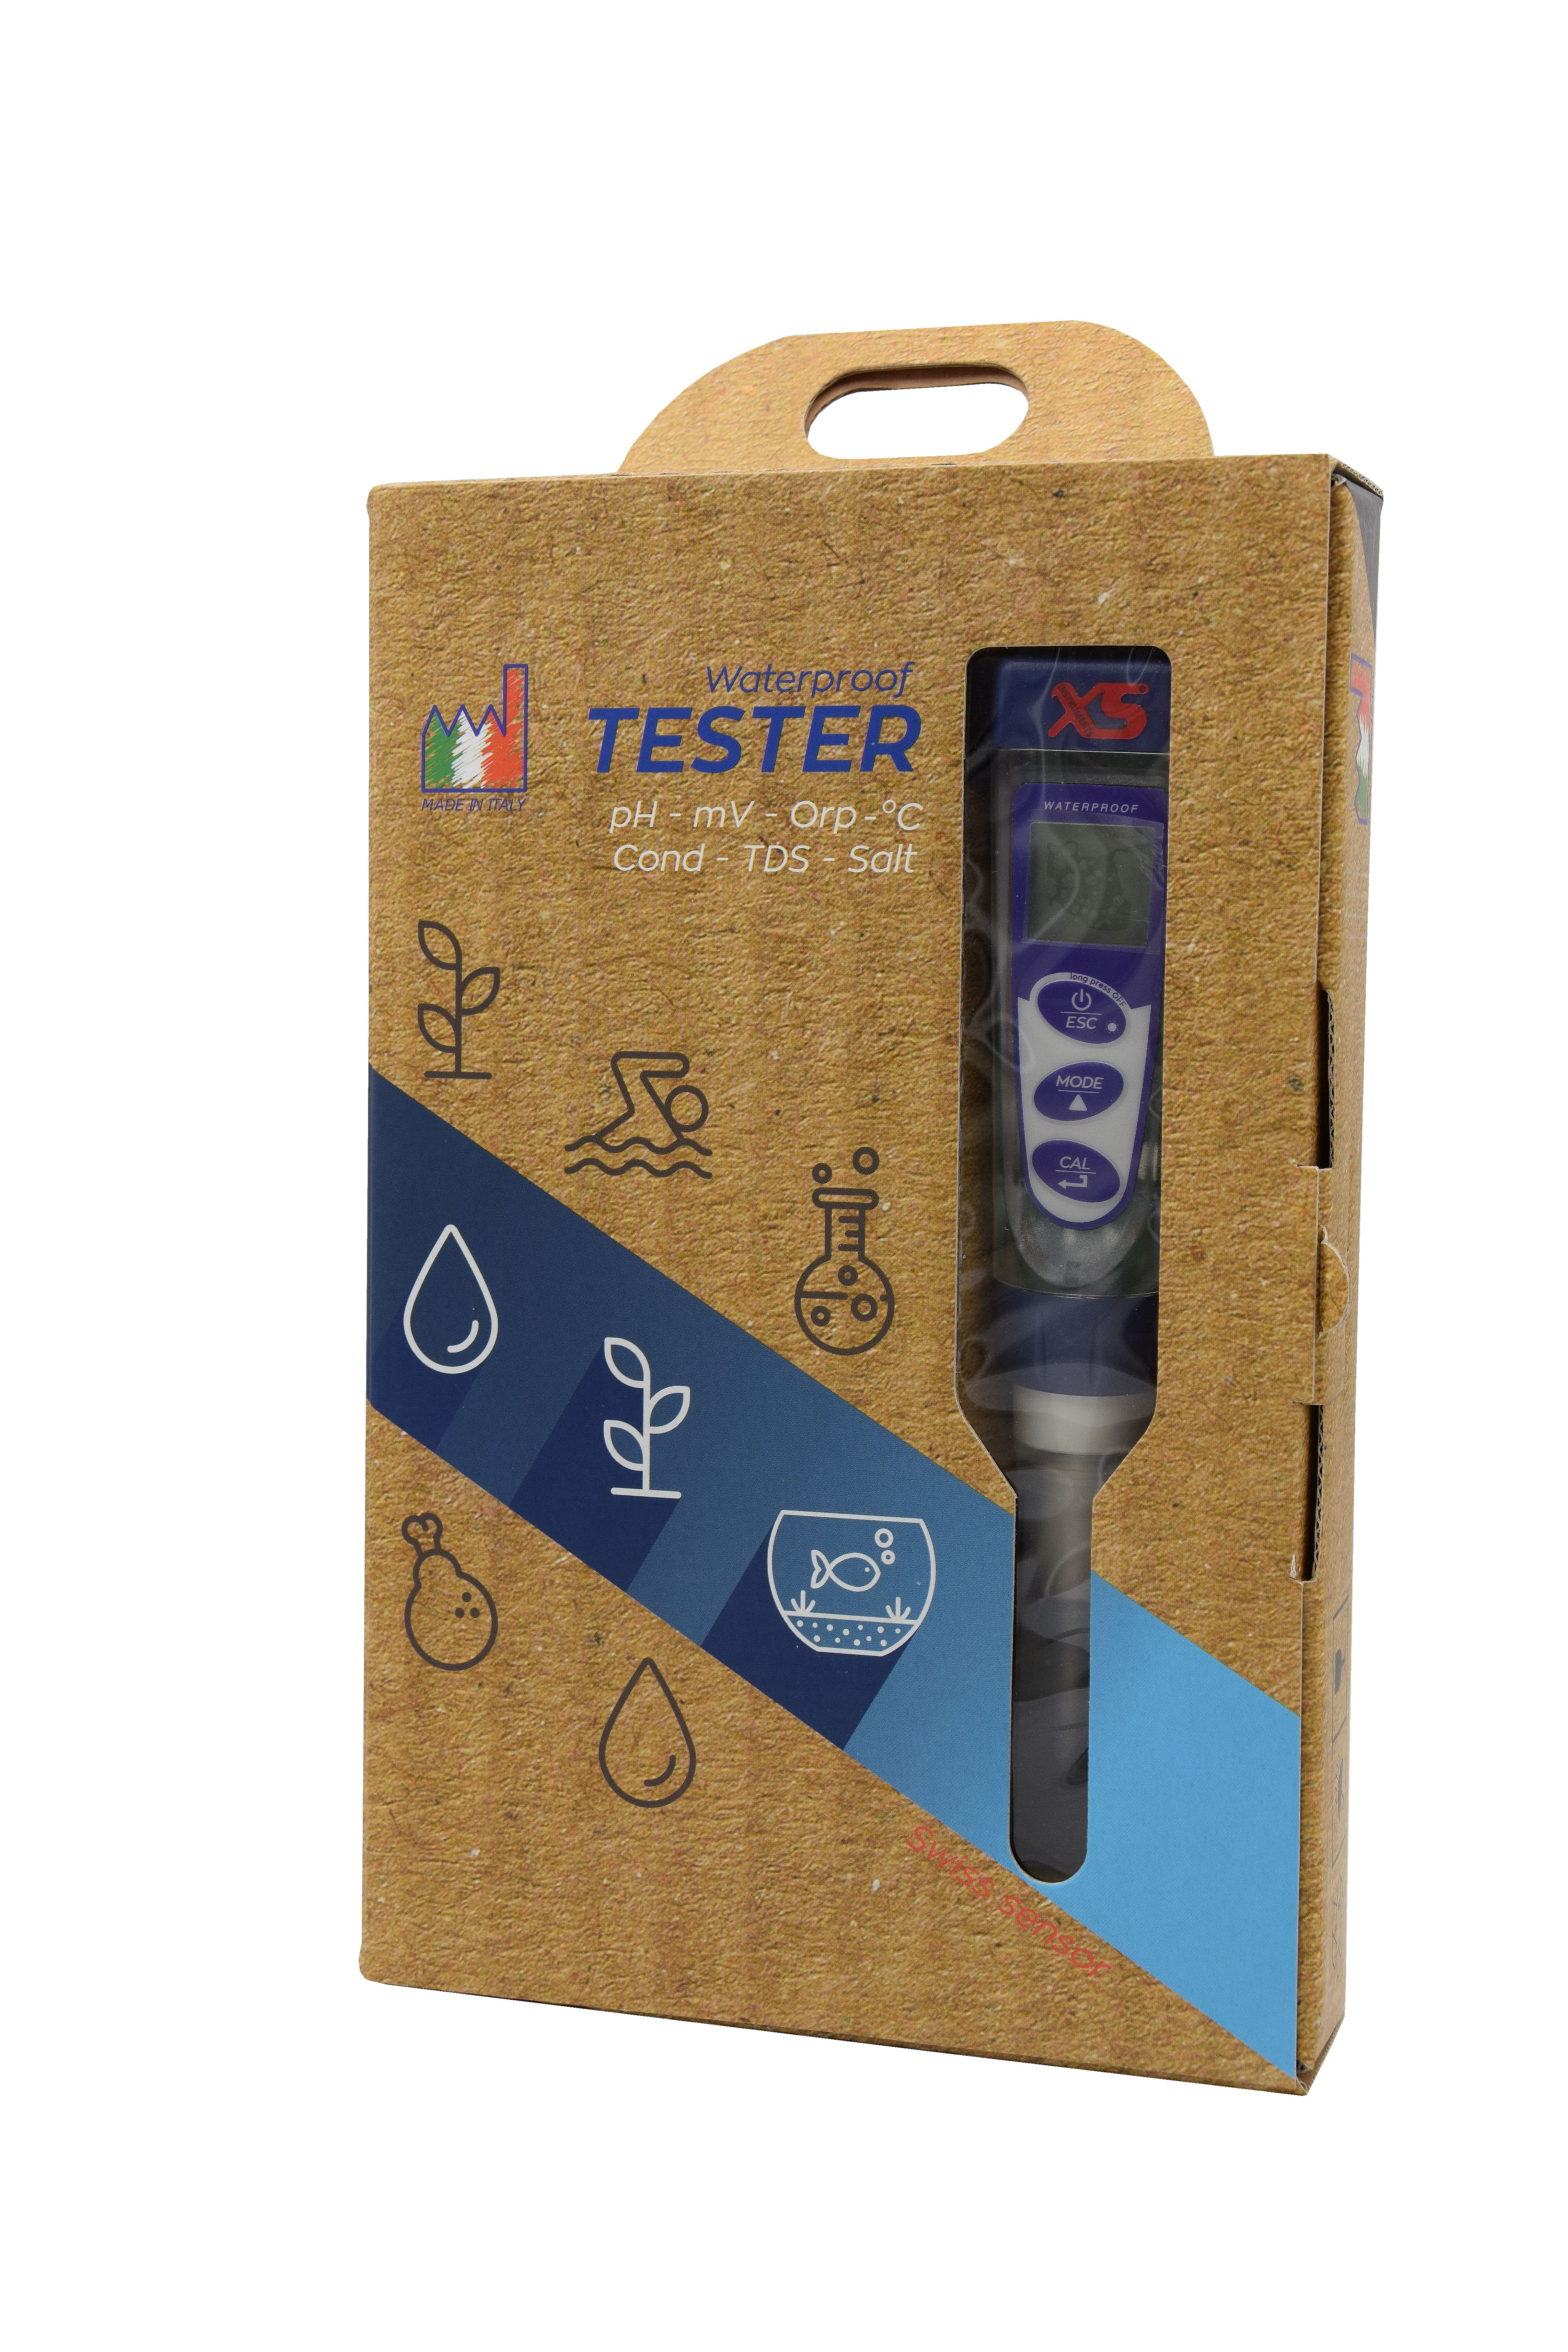 XS PC 6 Tester Kit -  Multiparameter Tester zur Bestimmung  des pH/mV/Redox/Leitfähigkeit/TDS/Salzgehalt/Temp. Wert